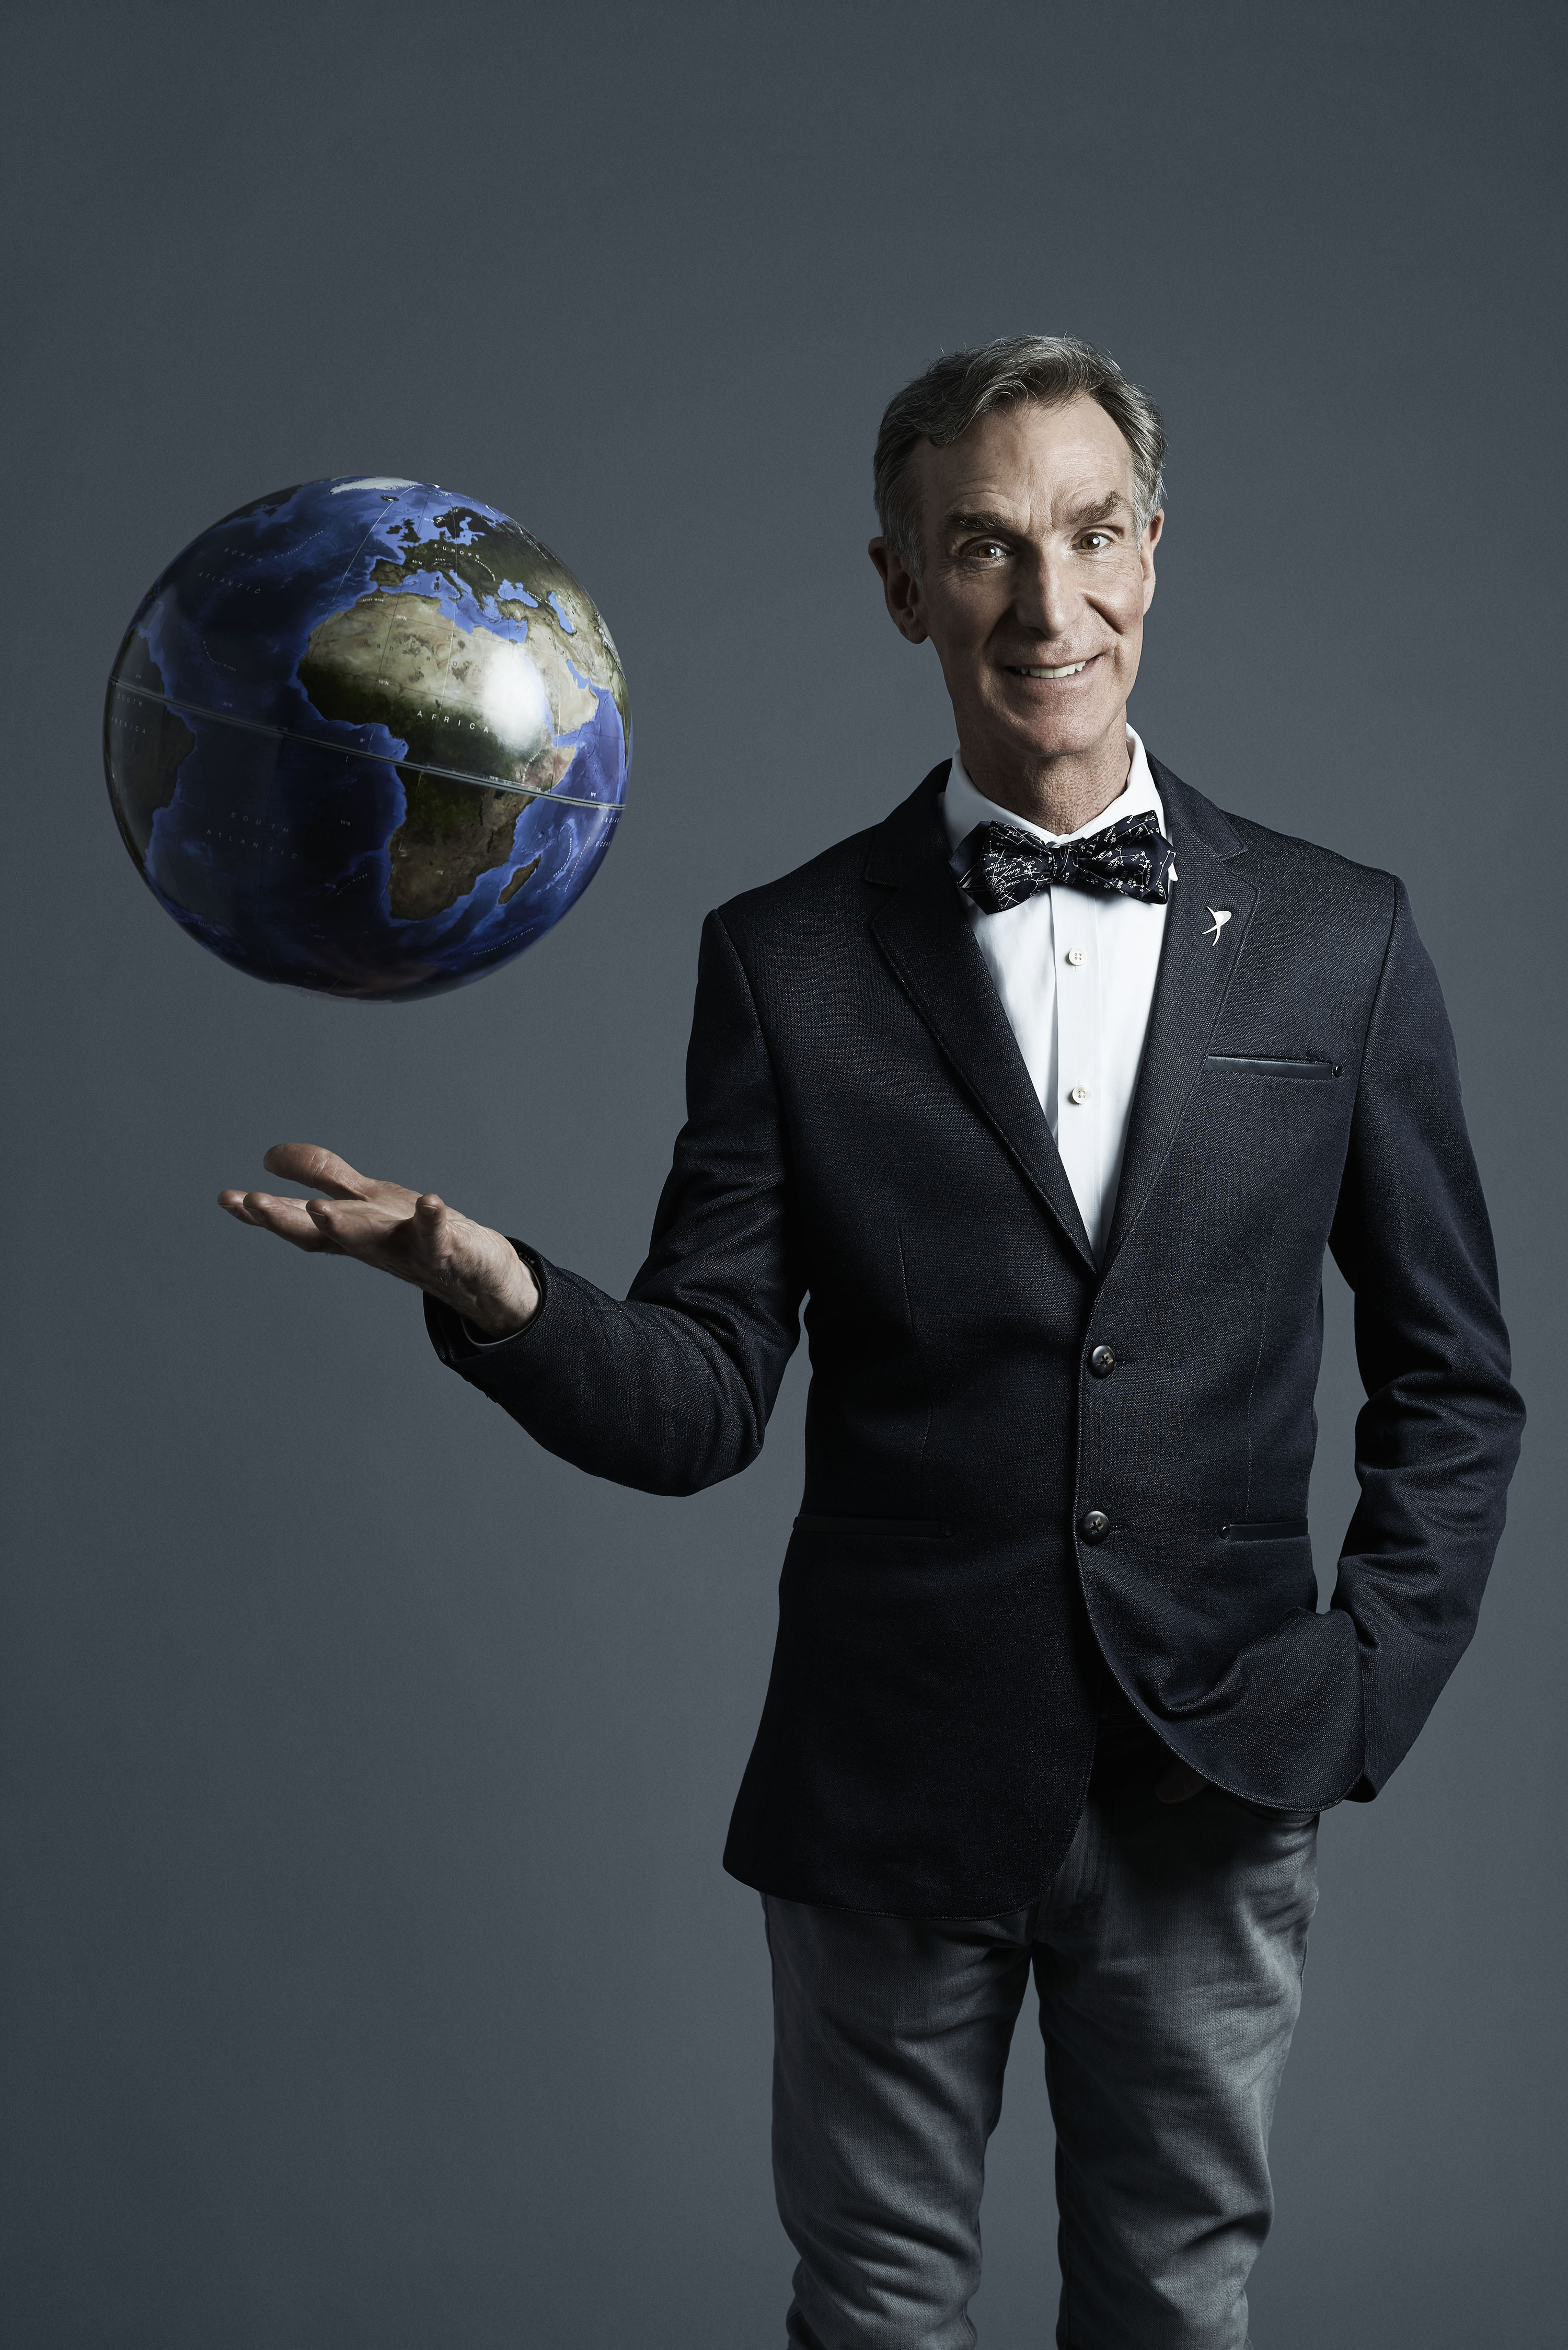 Planetary Society CEO Bill Nye | The Planetary Society3000 x 4495